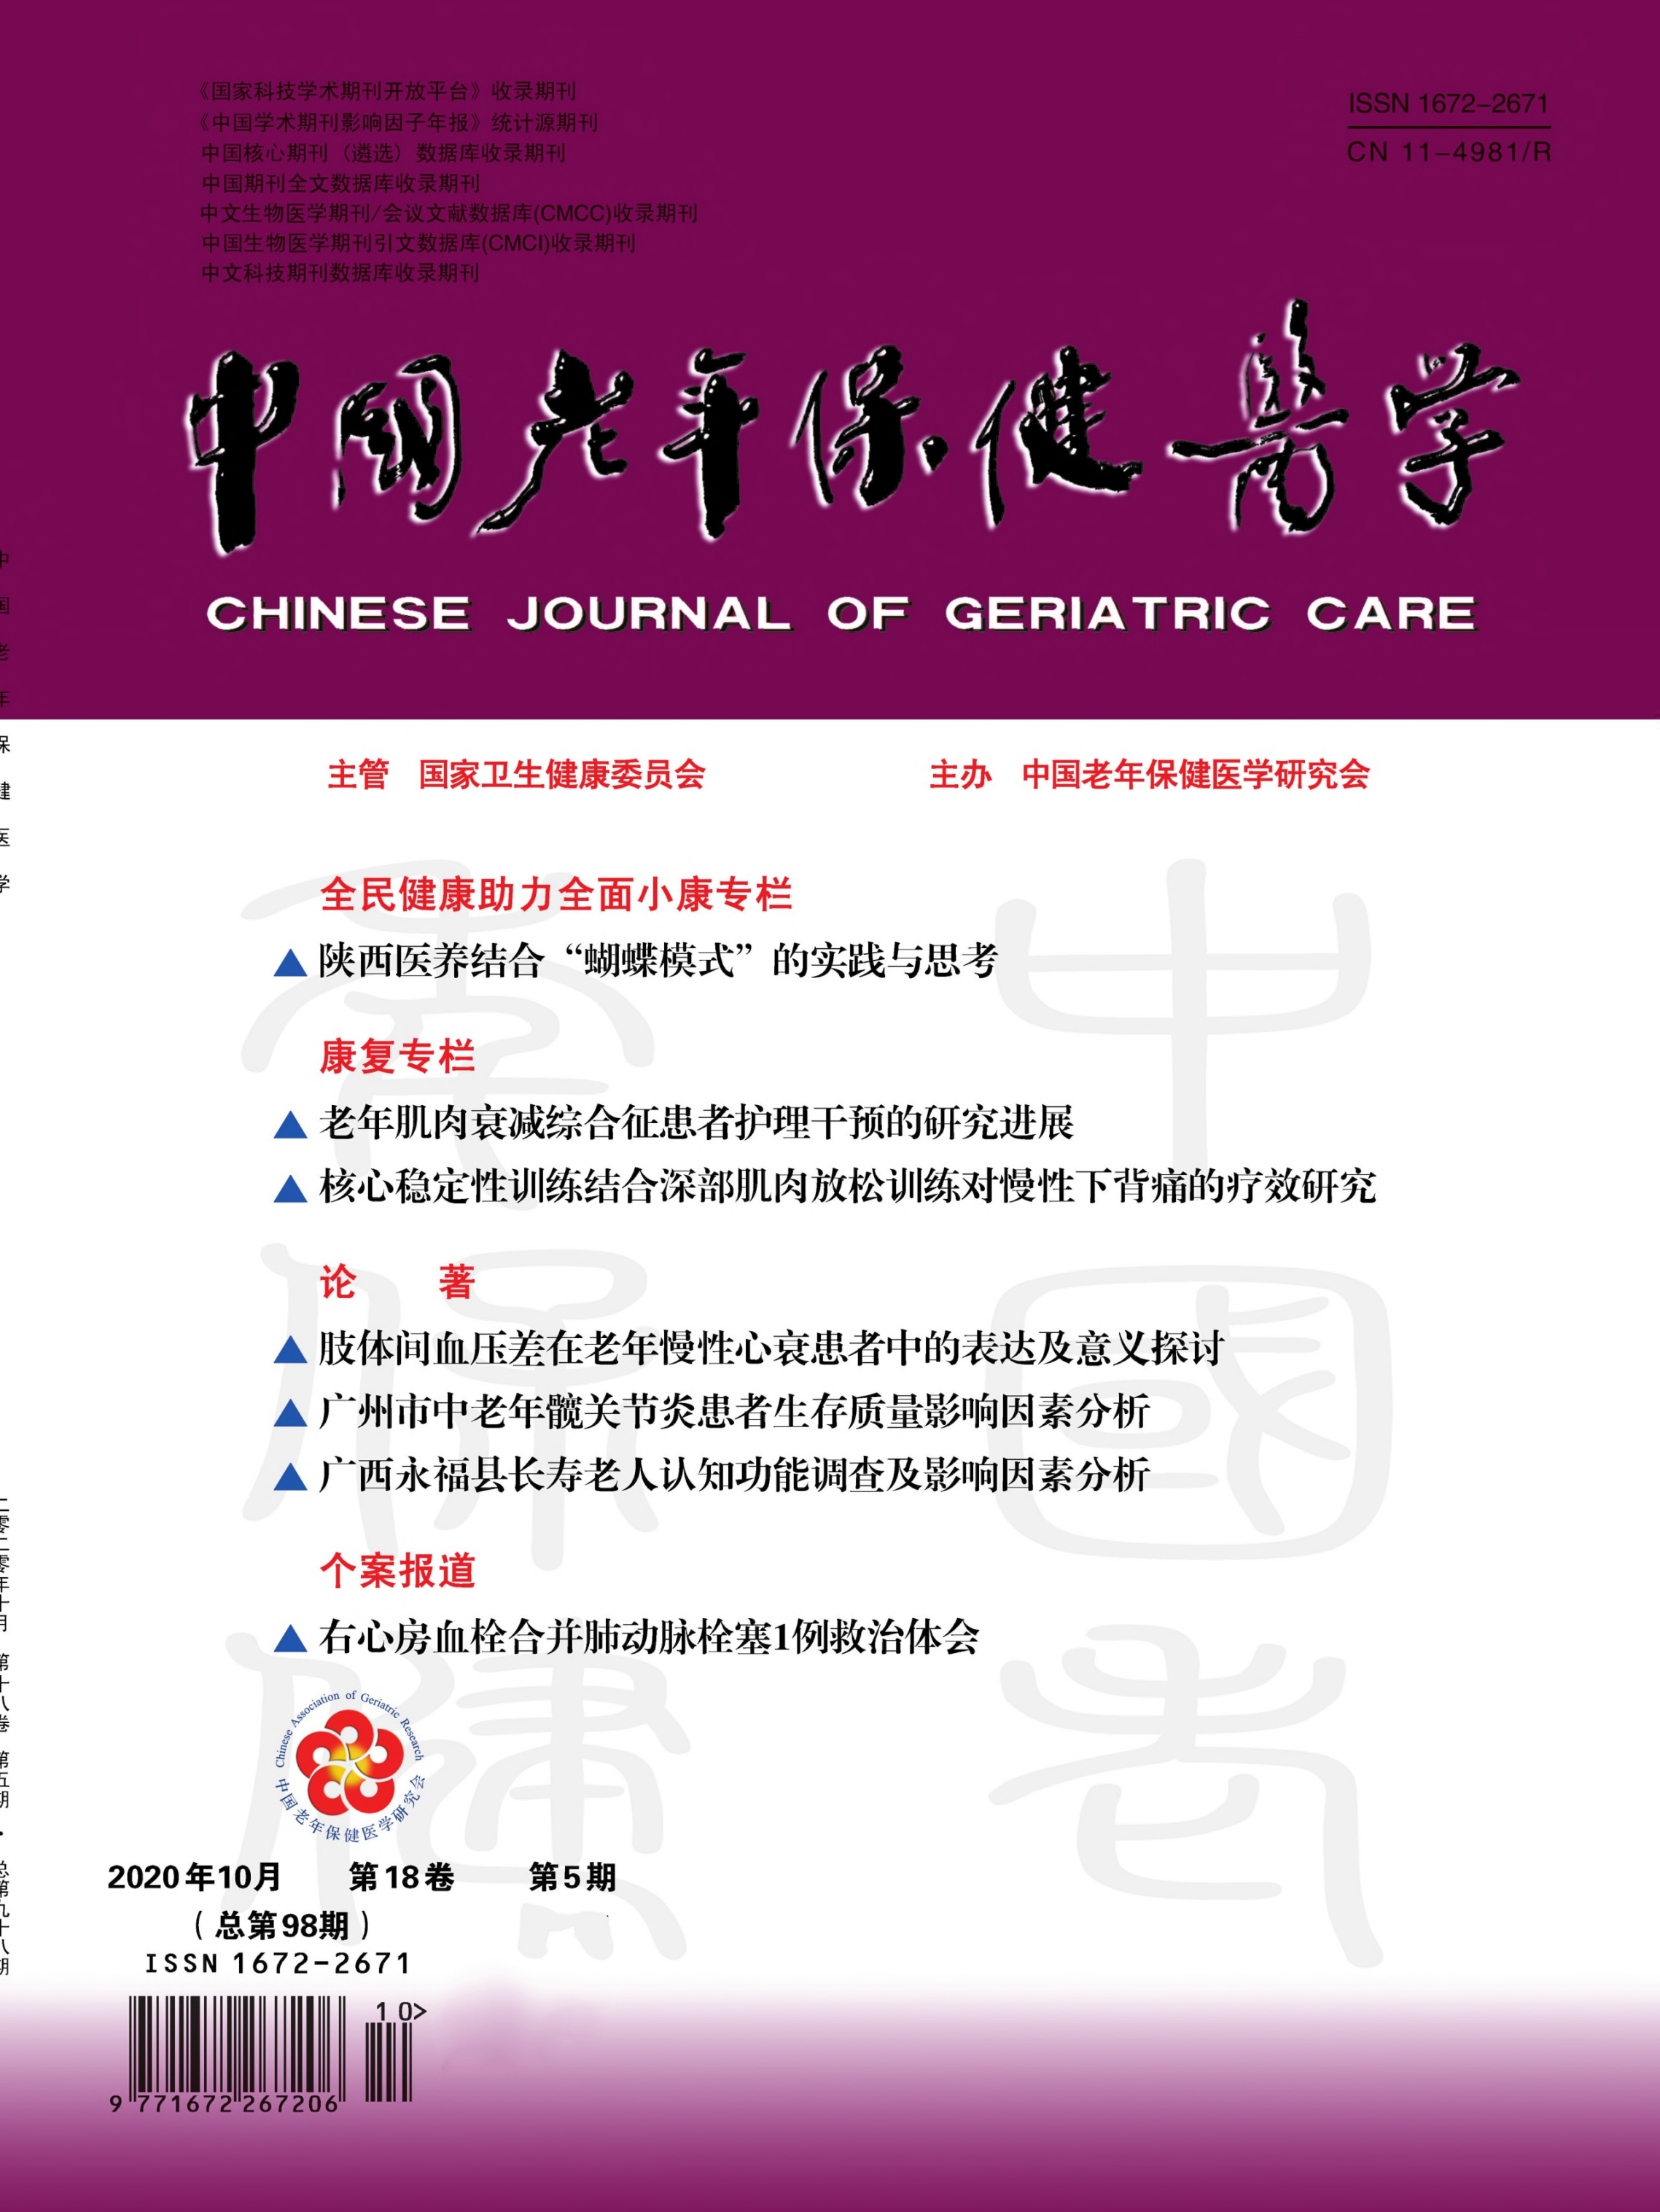 中华保健医学杂志是核心期刊吗,中华保健医学